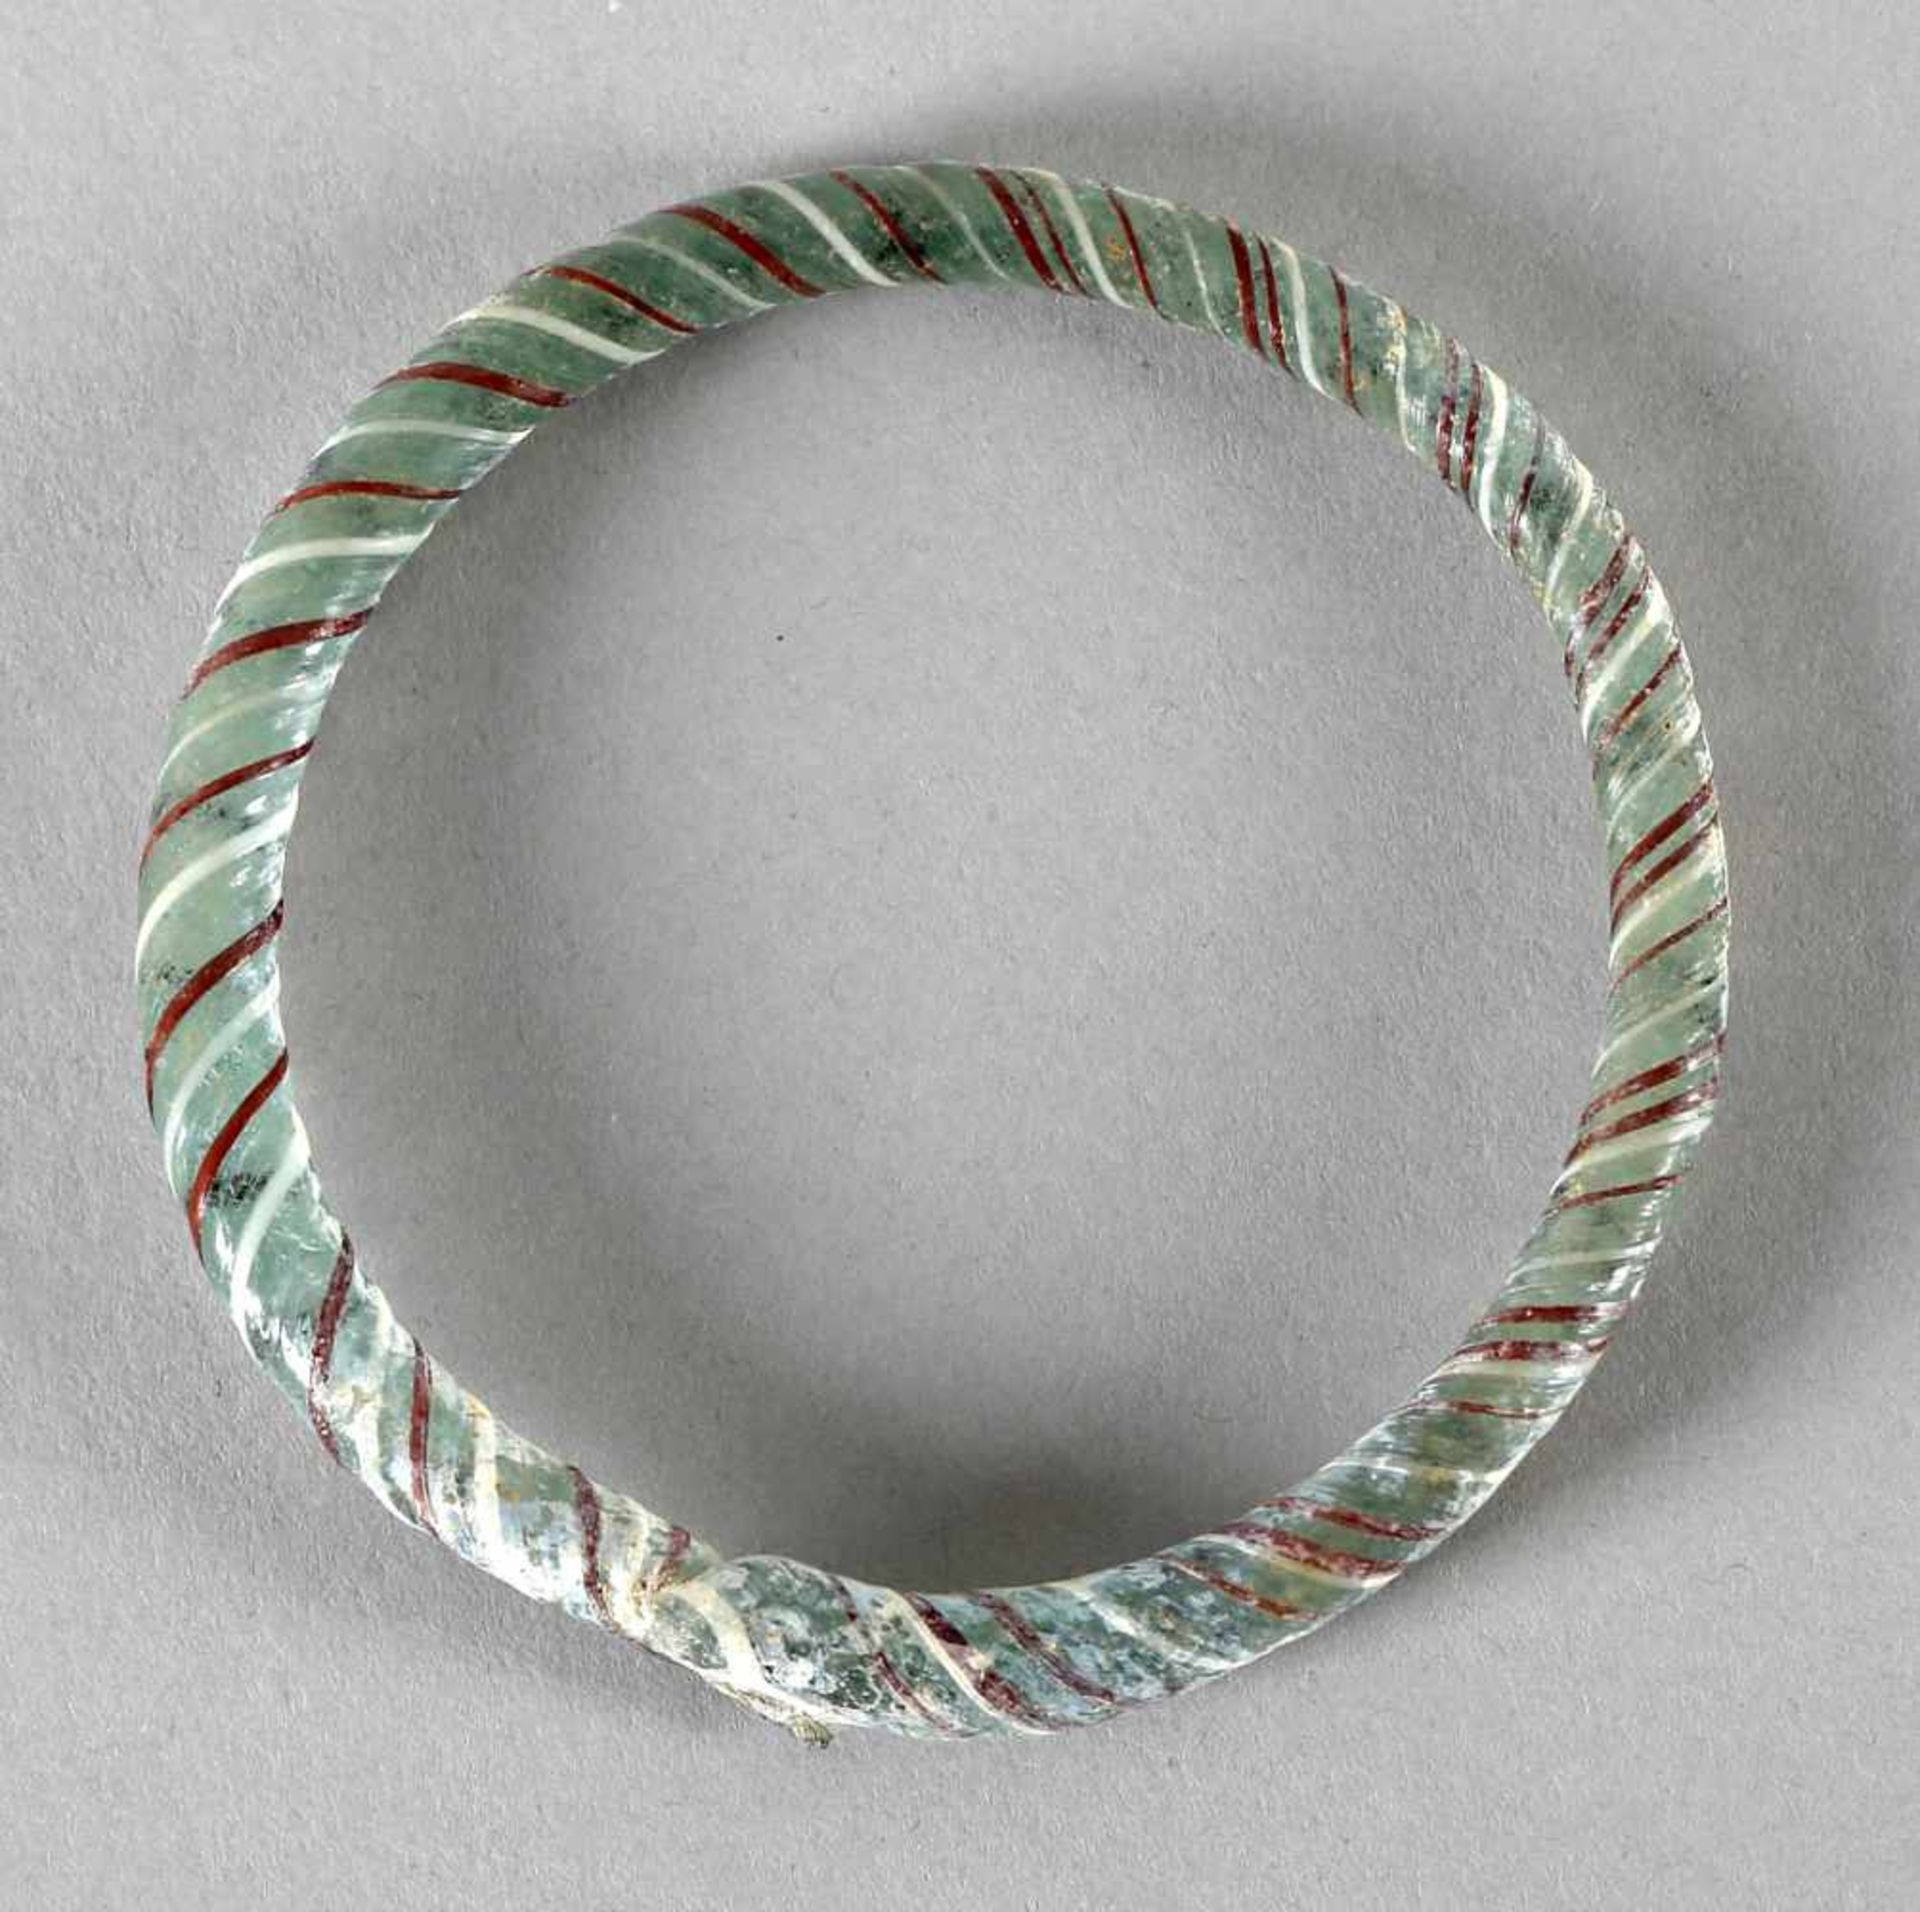 Armreif aus Glas, wohl römisch, 1. - 3. Jh.mit rundem Querschnitt, hellblaue Farbe, spiralförmig